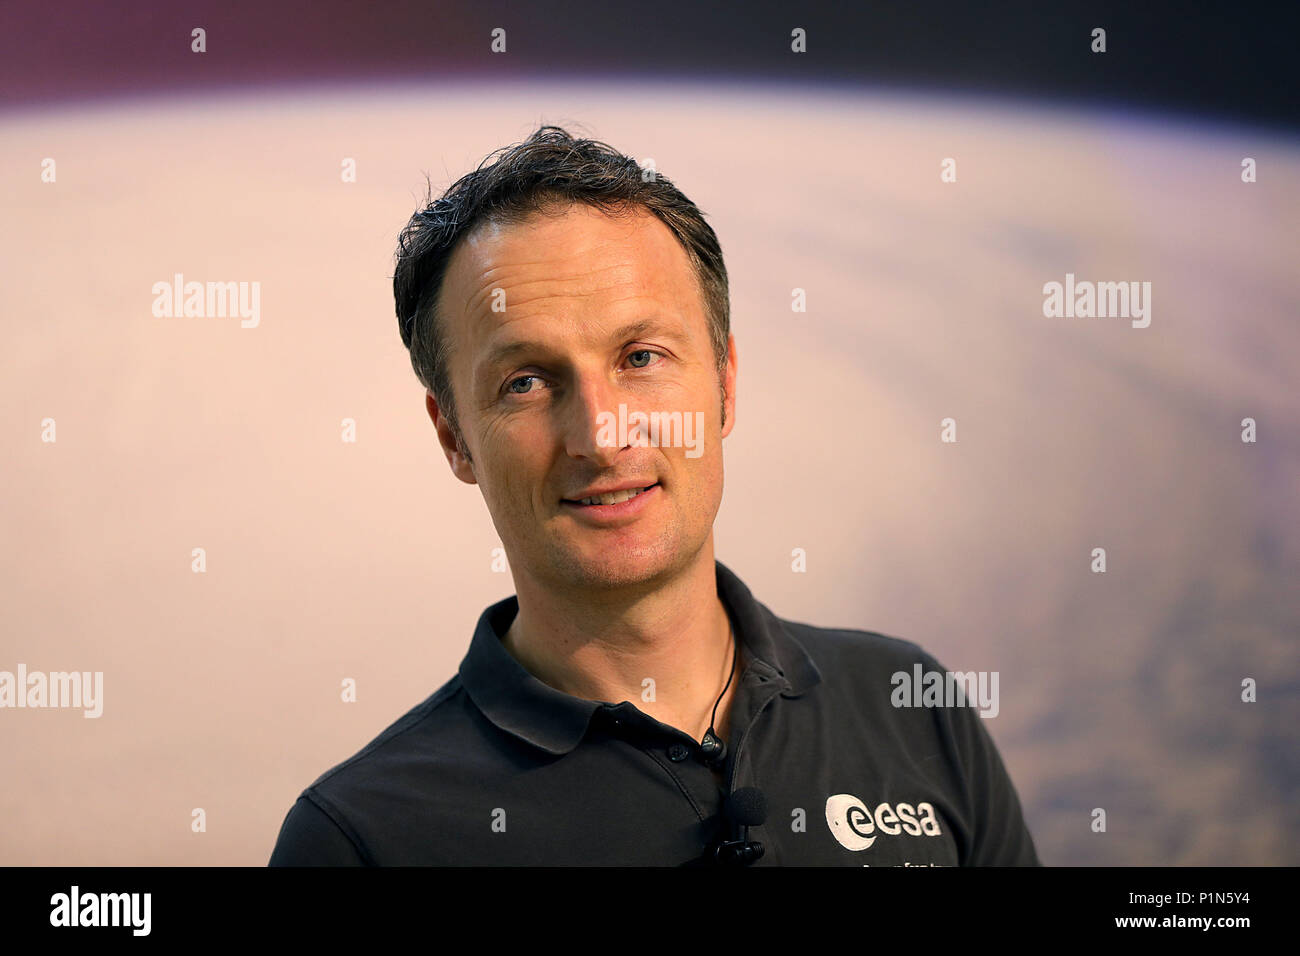 12 giugno 2018, Germania, Colonia: Matthias Maurer, tedesco l'astronauta dell'ESA, presenta un flusso video con Alexander Gerst, chi sta rispondendo alle domande dei giornalisti dalla Stazione spaziale internazionale. Foto: Oliver Berg/dpa Foto Stock